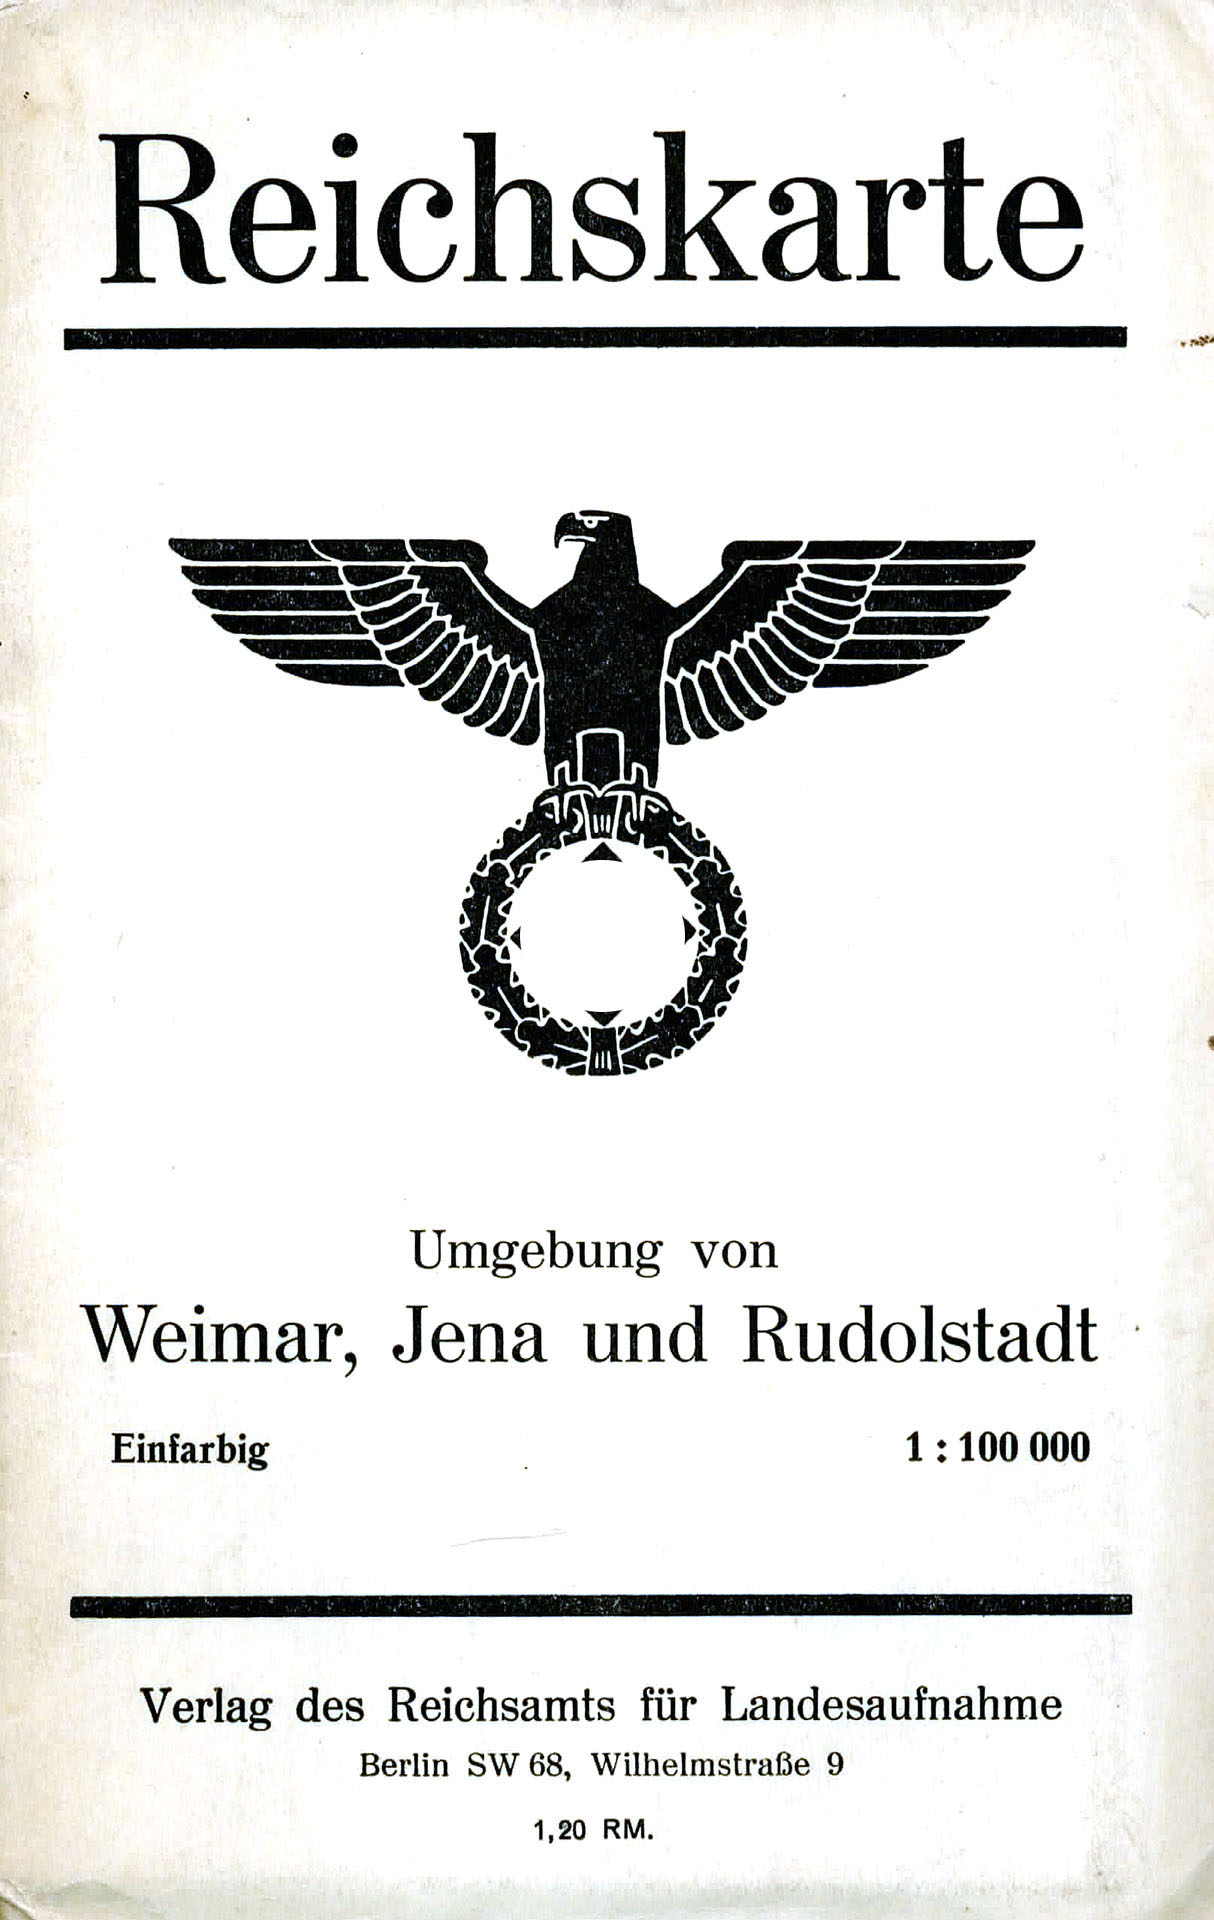 Reichskarte - Umgebung von Weimar, Jena und Rudolstadt